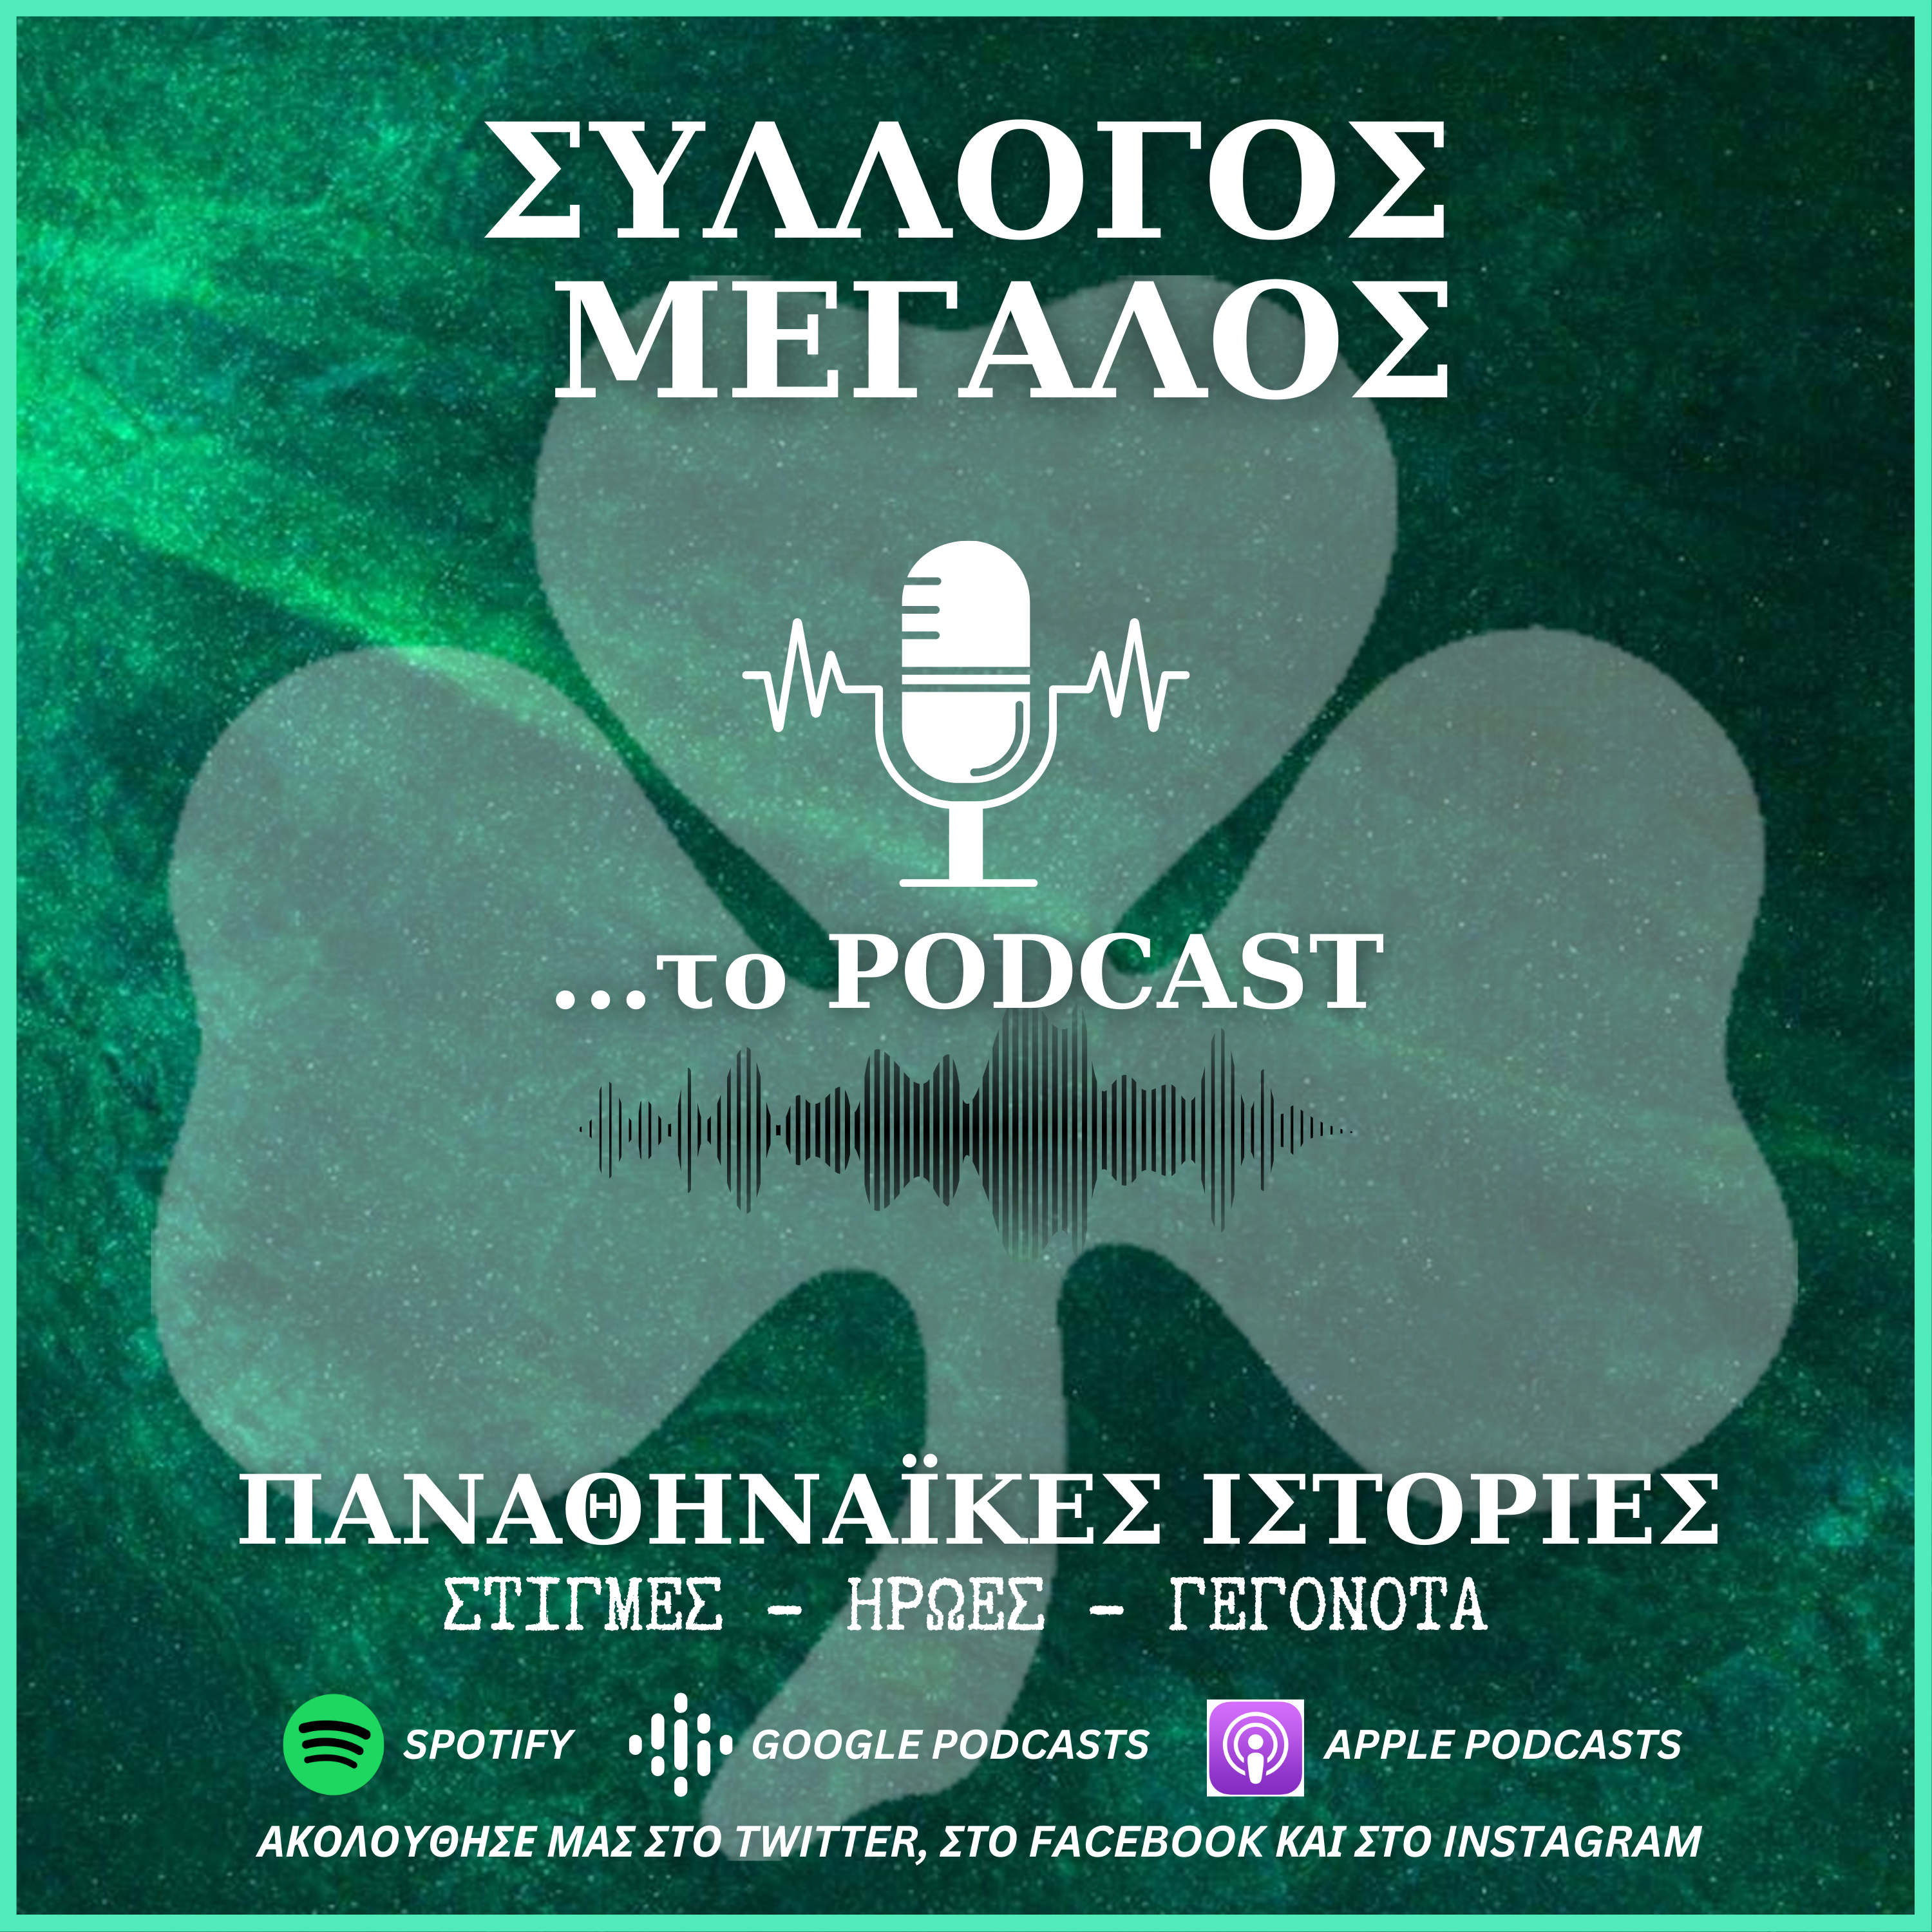 “Σύλλογος Μεγάλος…το podcast”: Η πορεία του Παναθηναϊκού στο Κύπελλο Ελλάδας